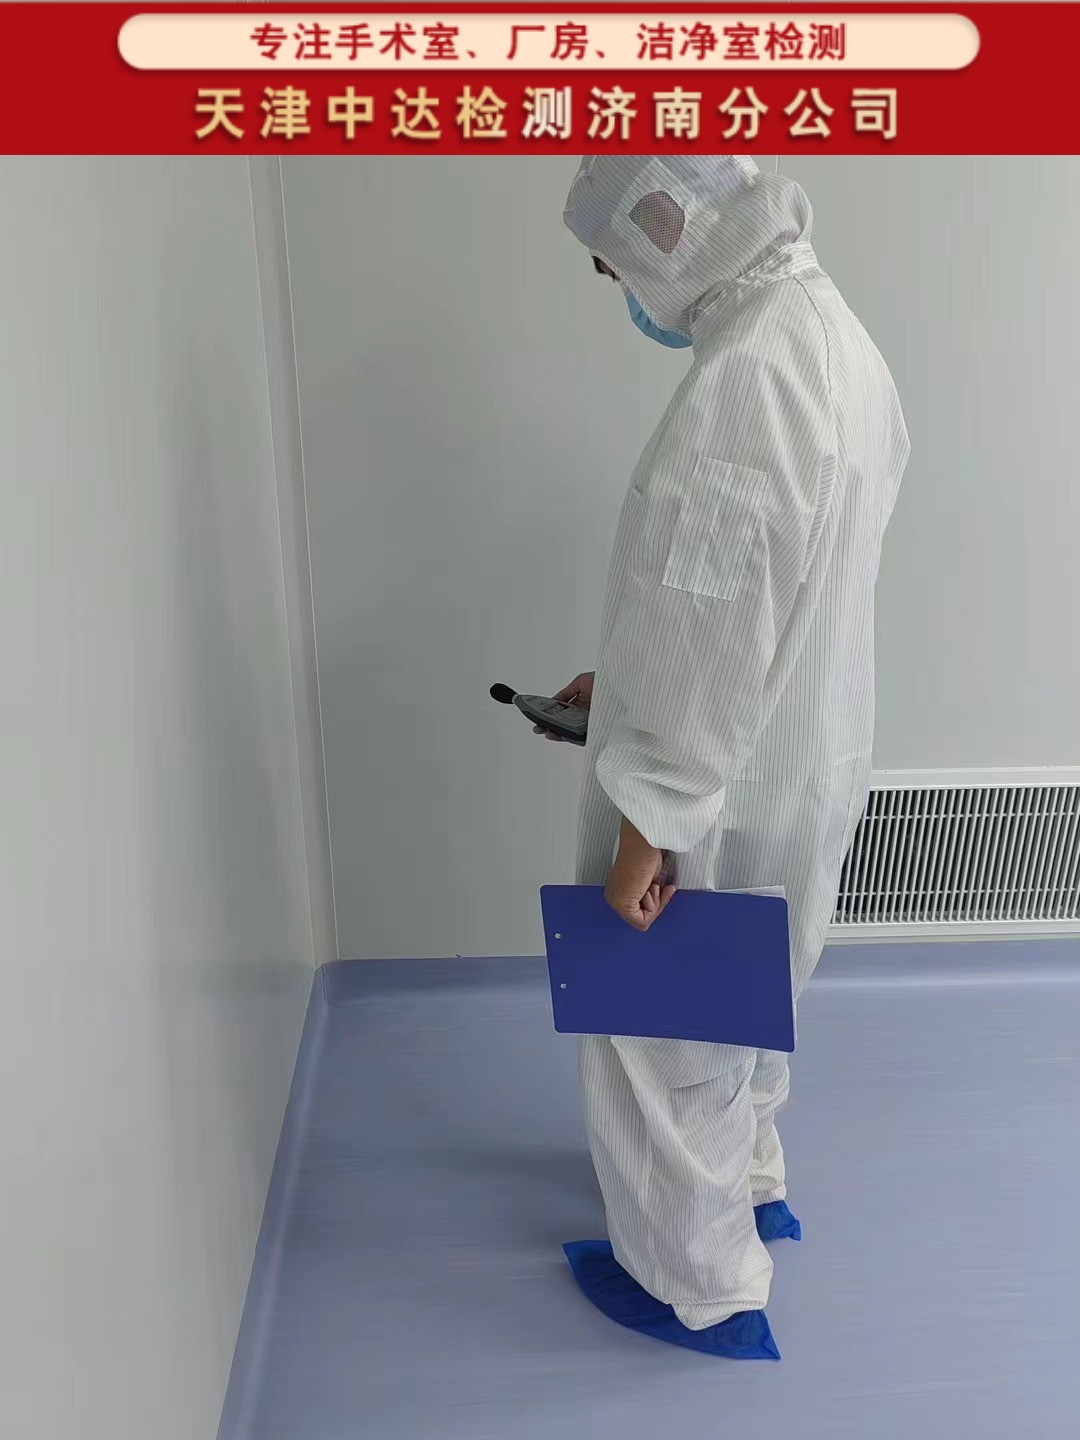 青岛即墨区层流净化手术室洁净车间检测内容和方法-天津中达检测济南分公司